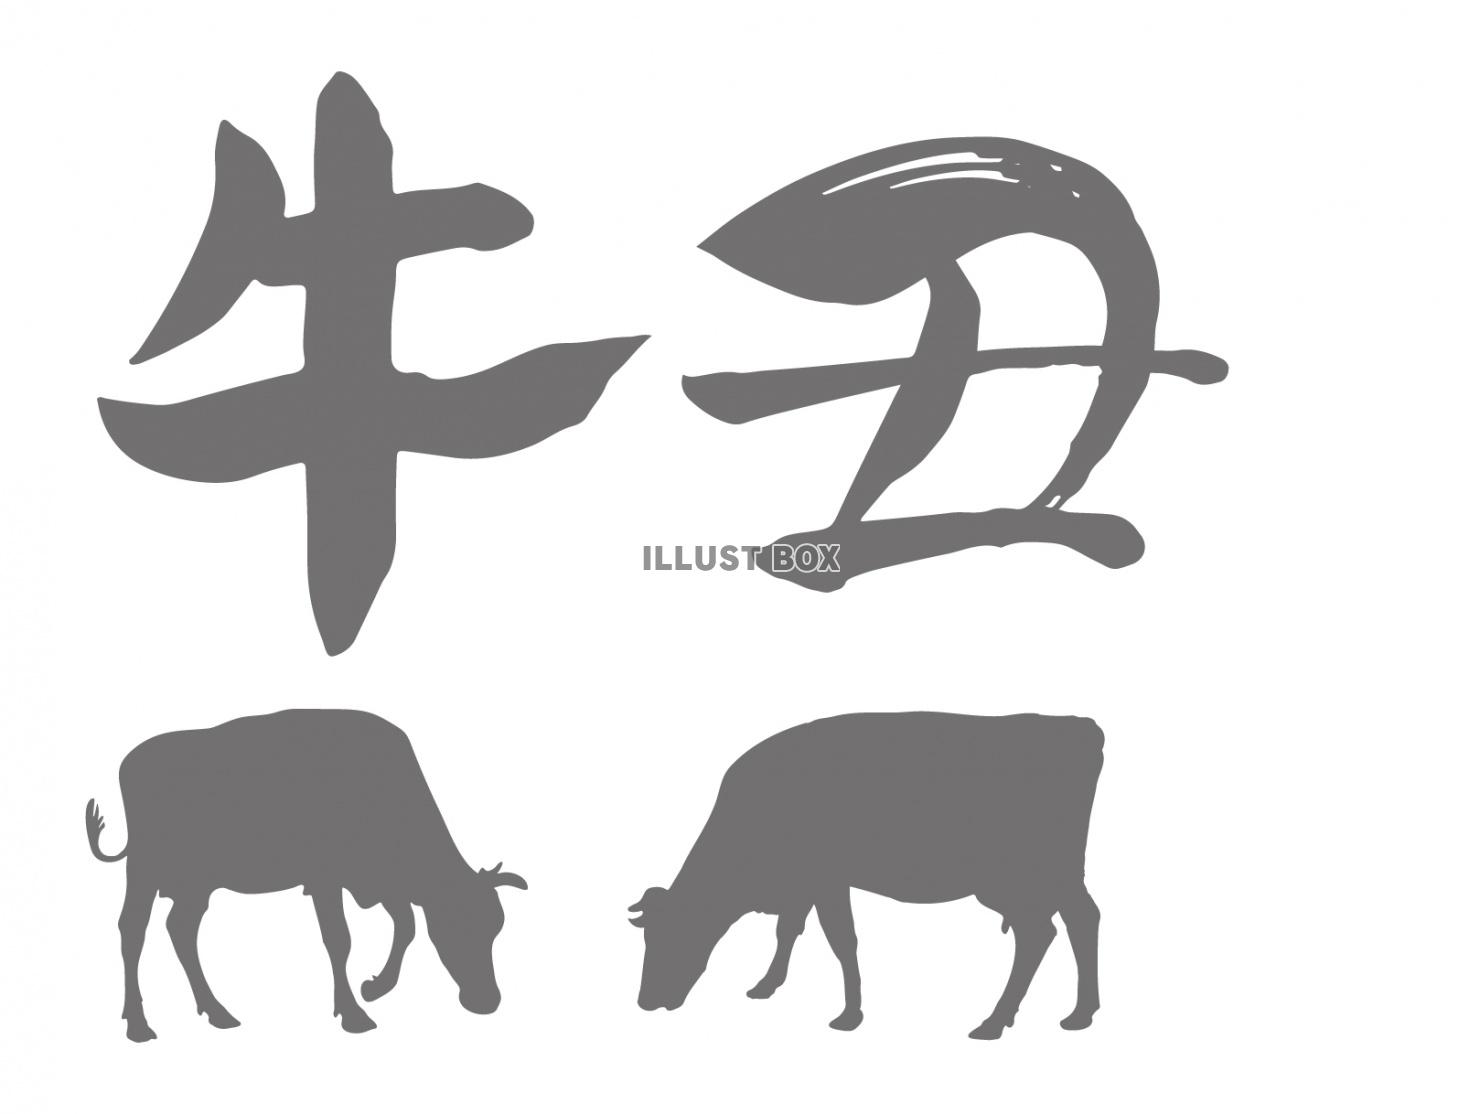 丑年（うしどし）の筆文字と牛のイラスト